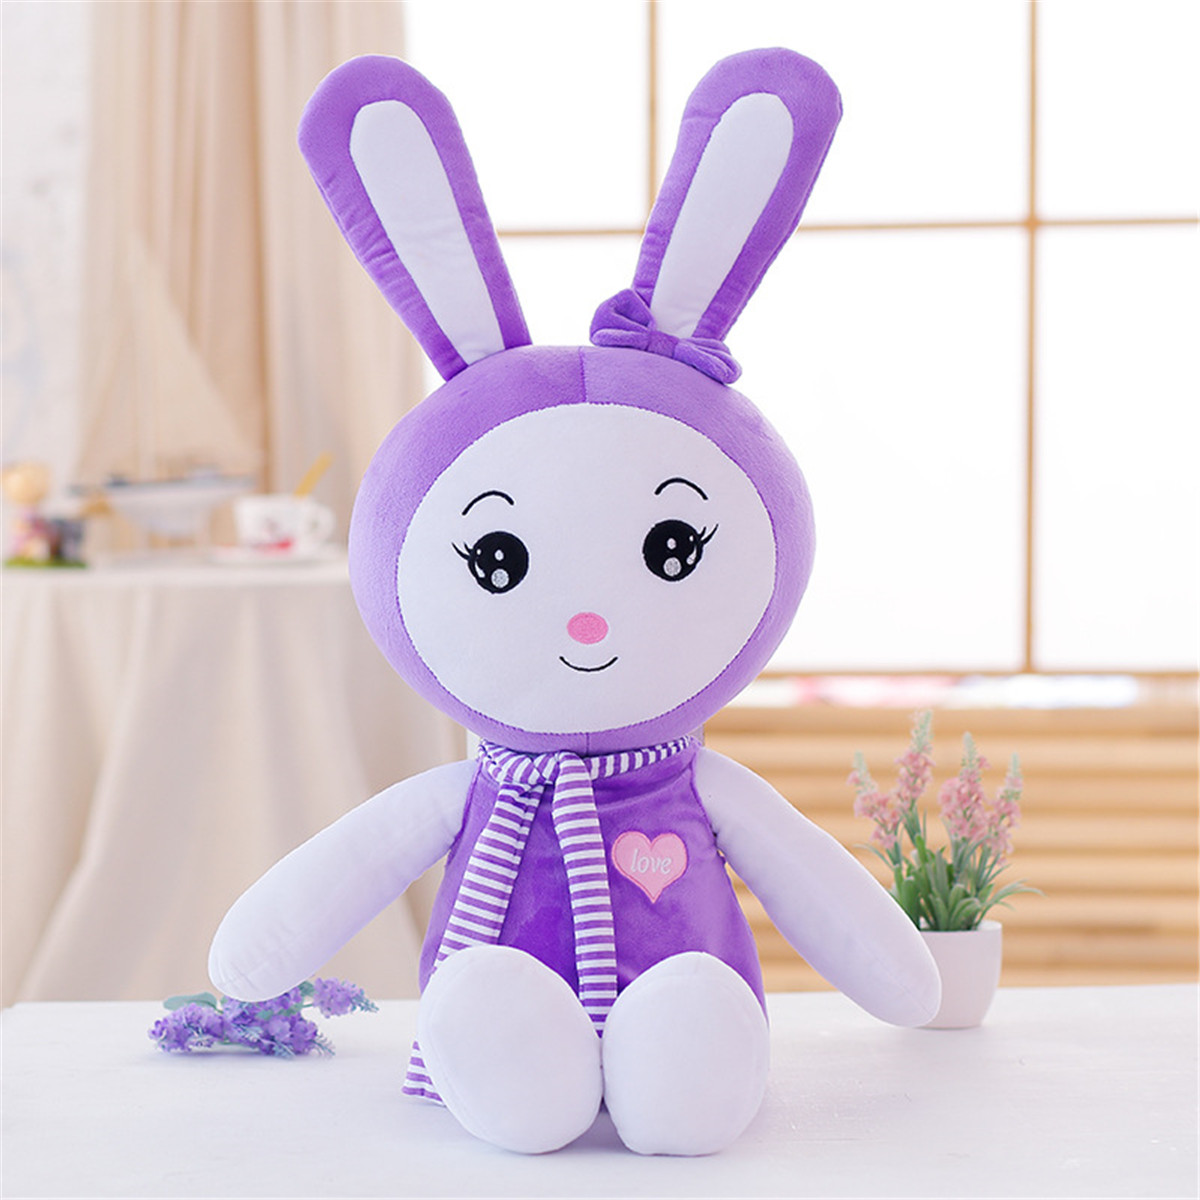 铠私乐可爱长耳朵兔子公仔毛绒玩具围巾兔抱枕布娃娃color紫色圆眼